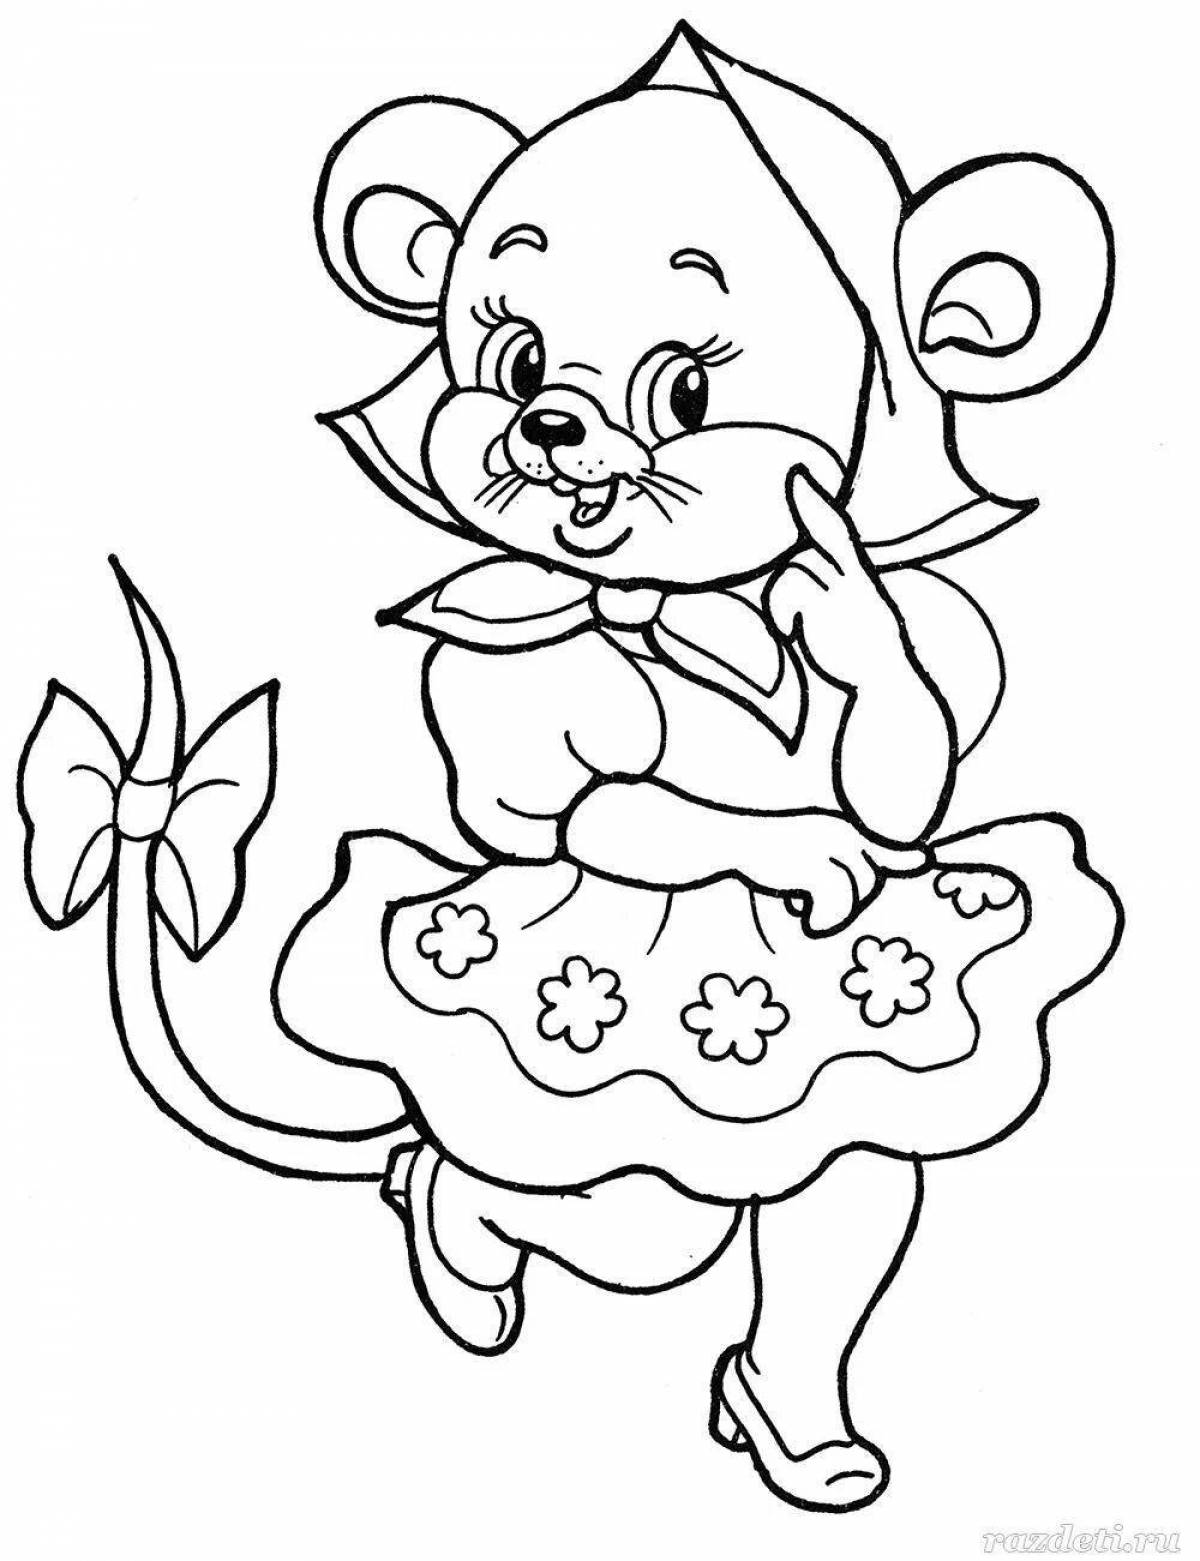 Выдающаяся страница раскраски мыши для детей 4-5 лет